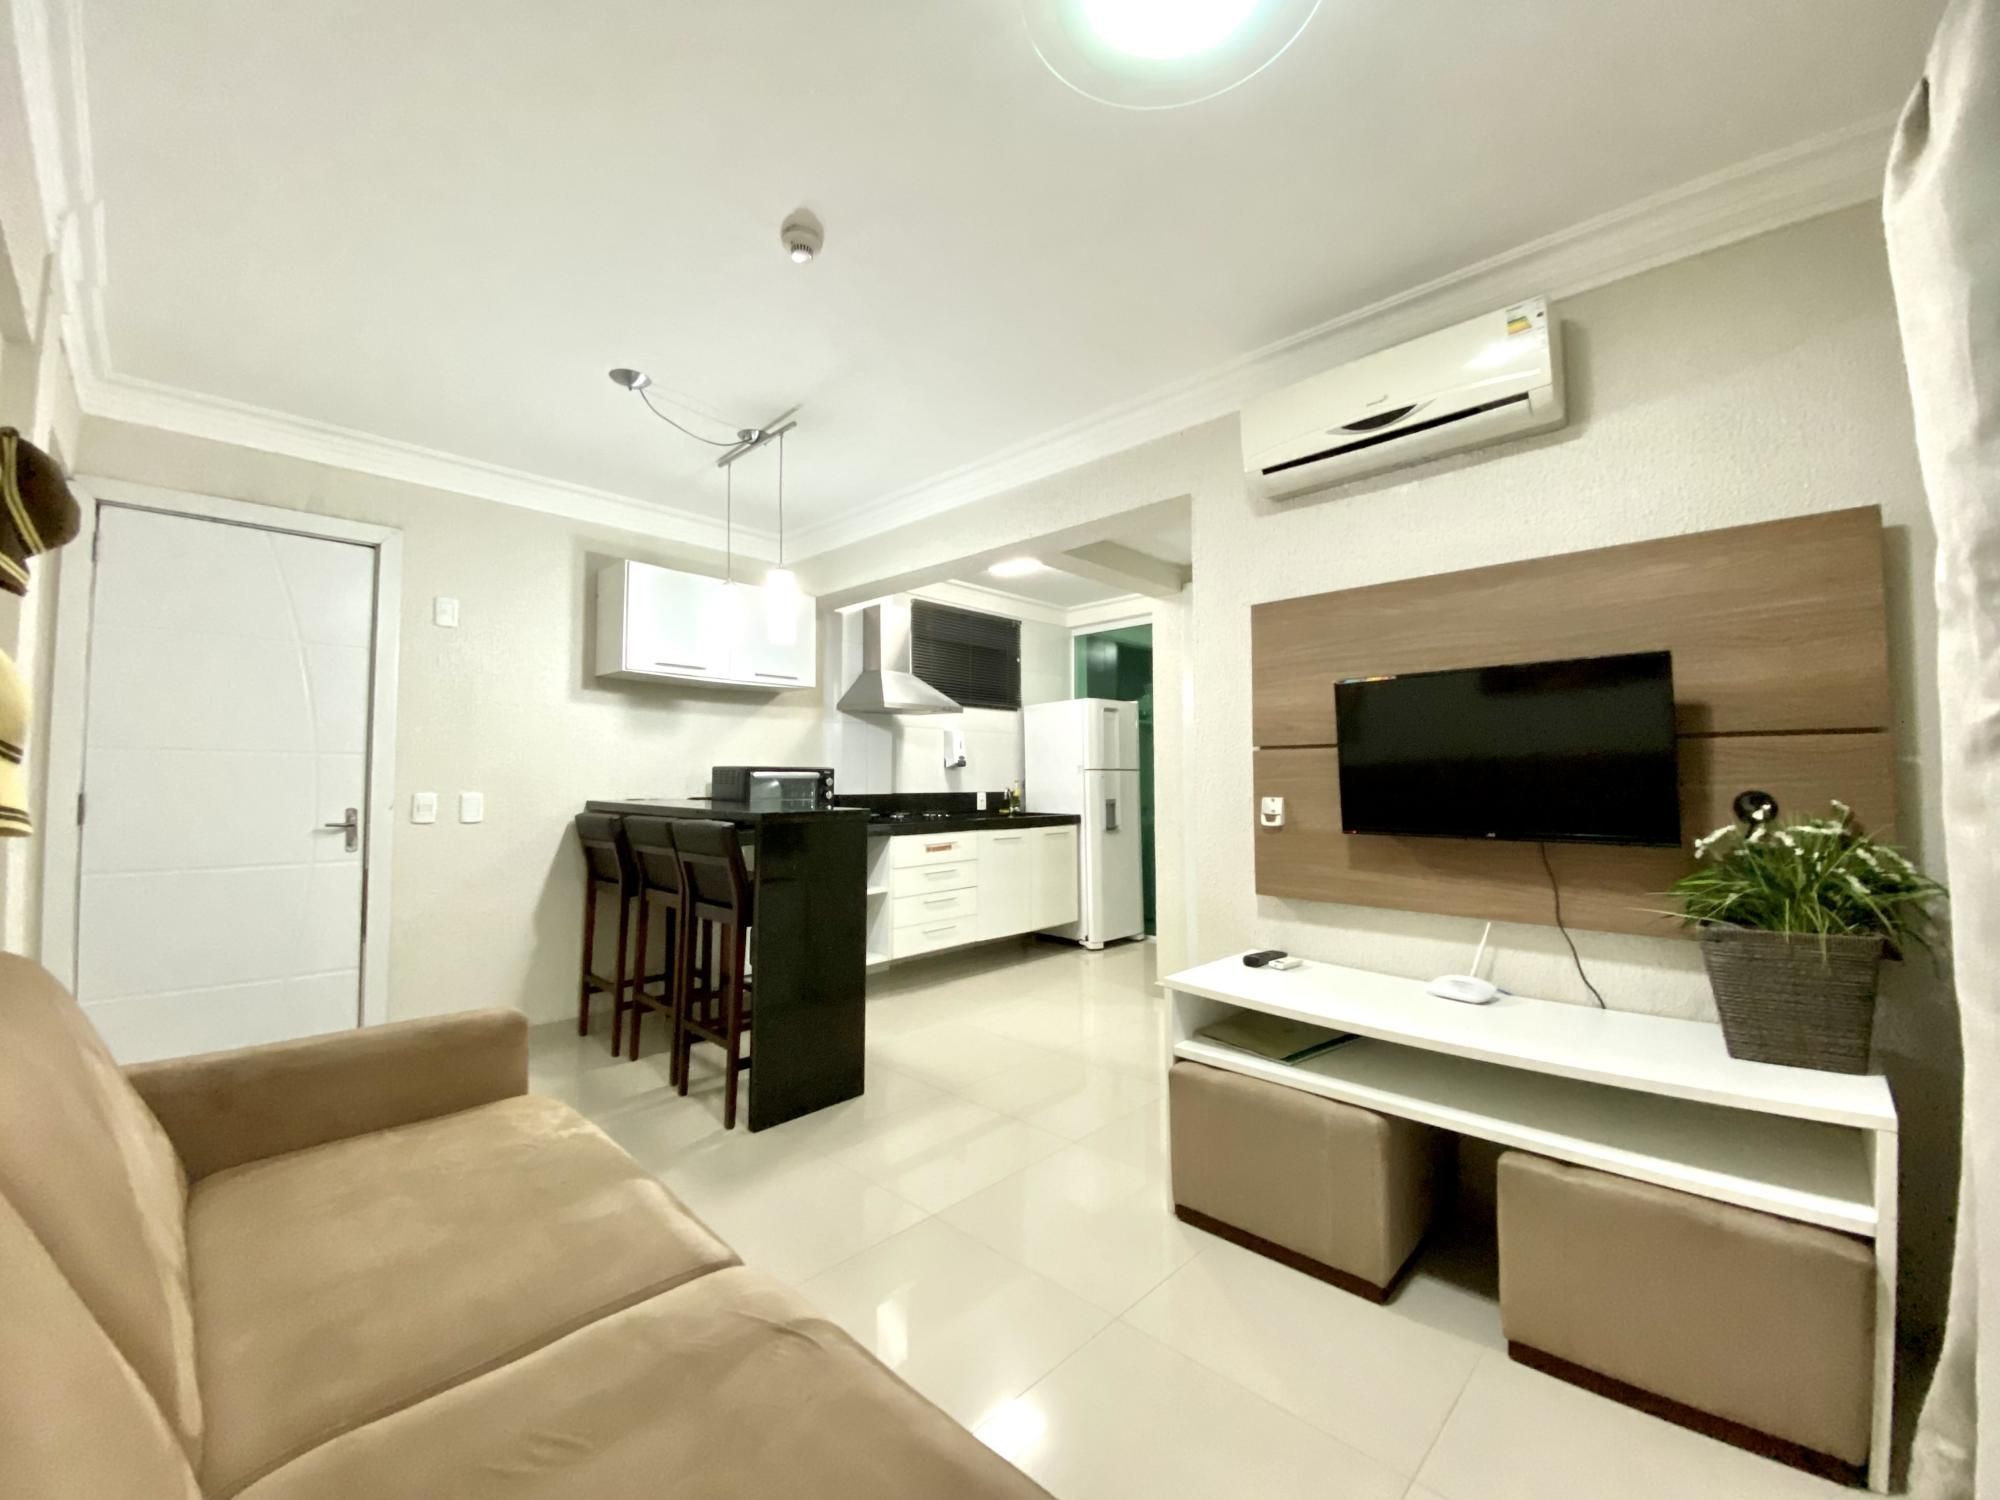 Apartamento com 1 Dormitórios para alugar, 44 m² valor à combinar